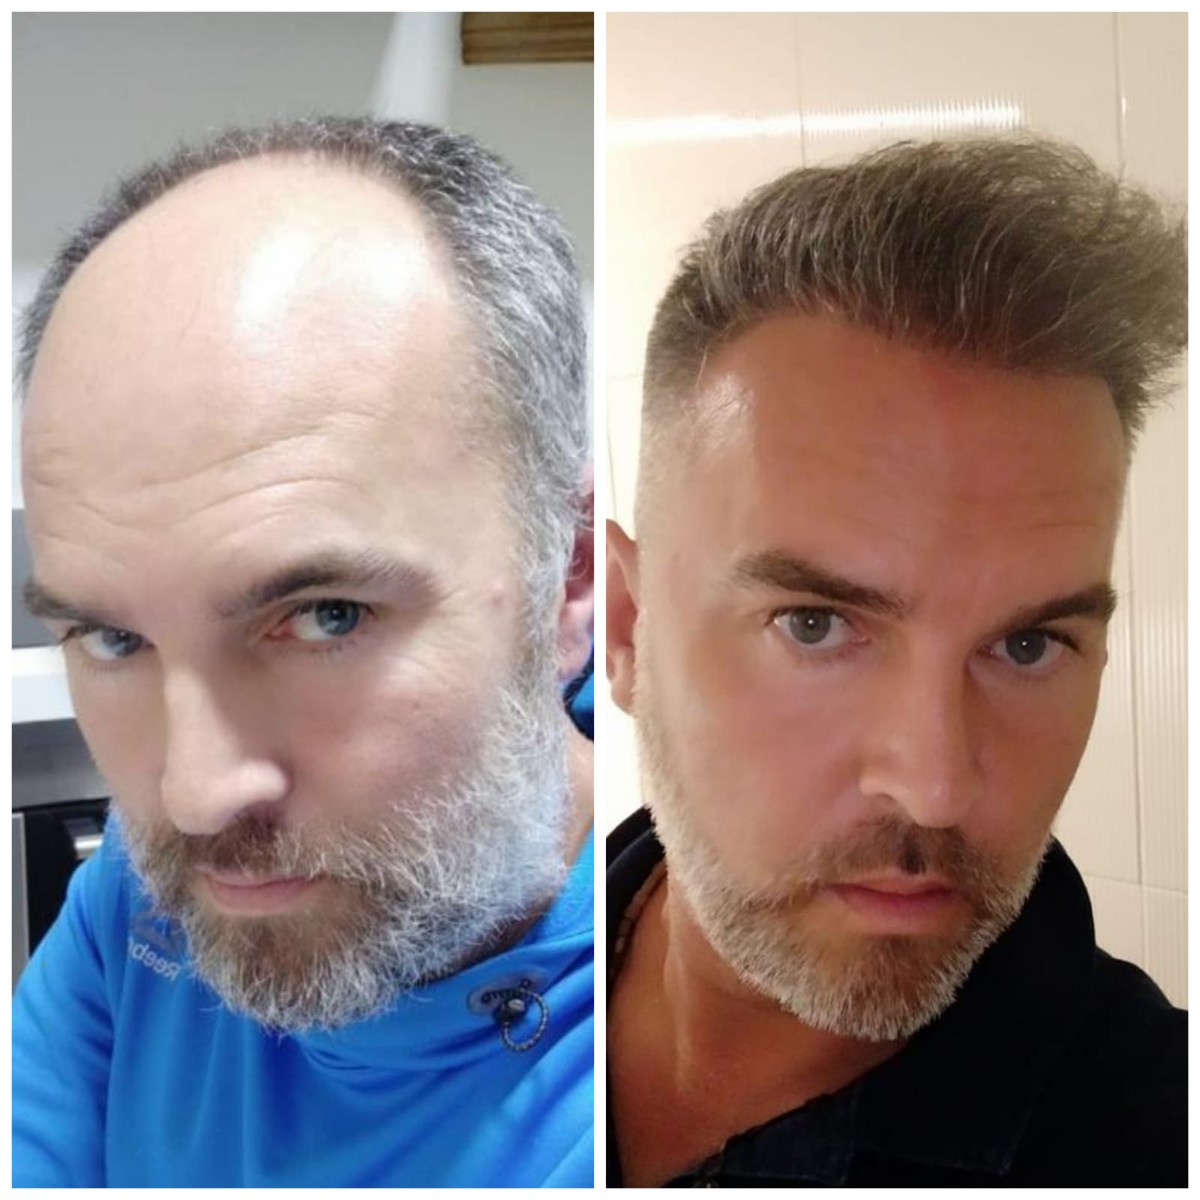 trasplante de cabello antes y después fotos